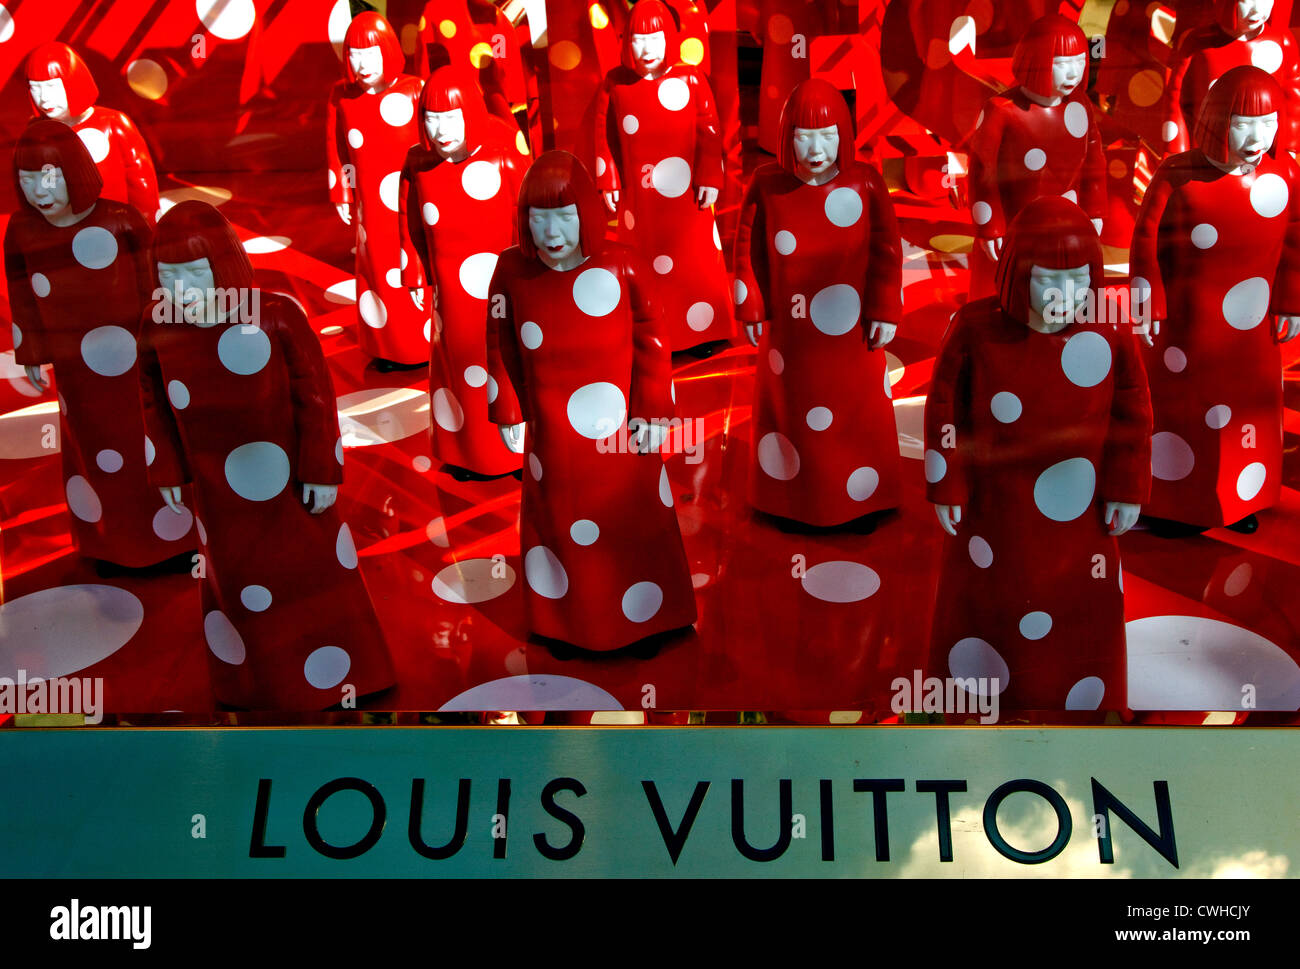 Louis Vuitton at Selfridges by Yayoi Kusama, London store design